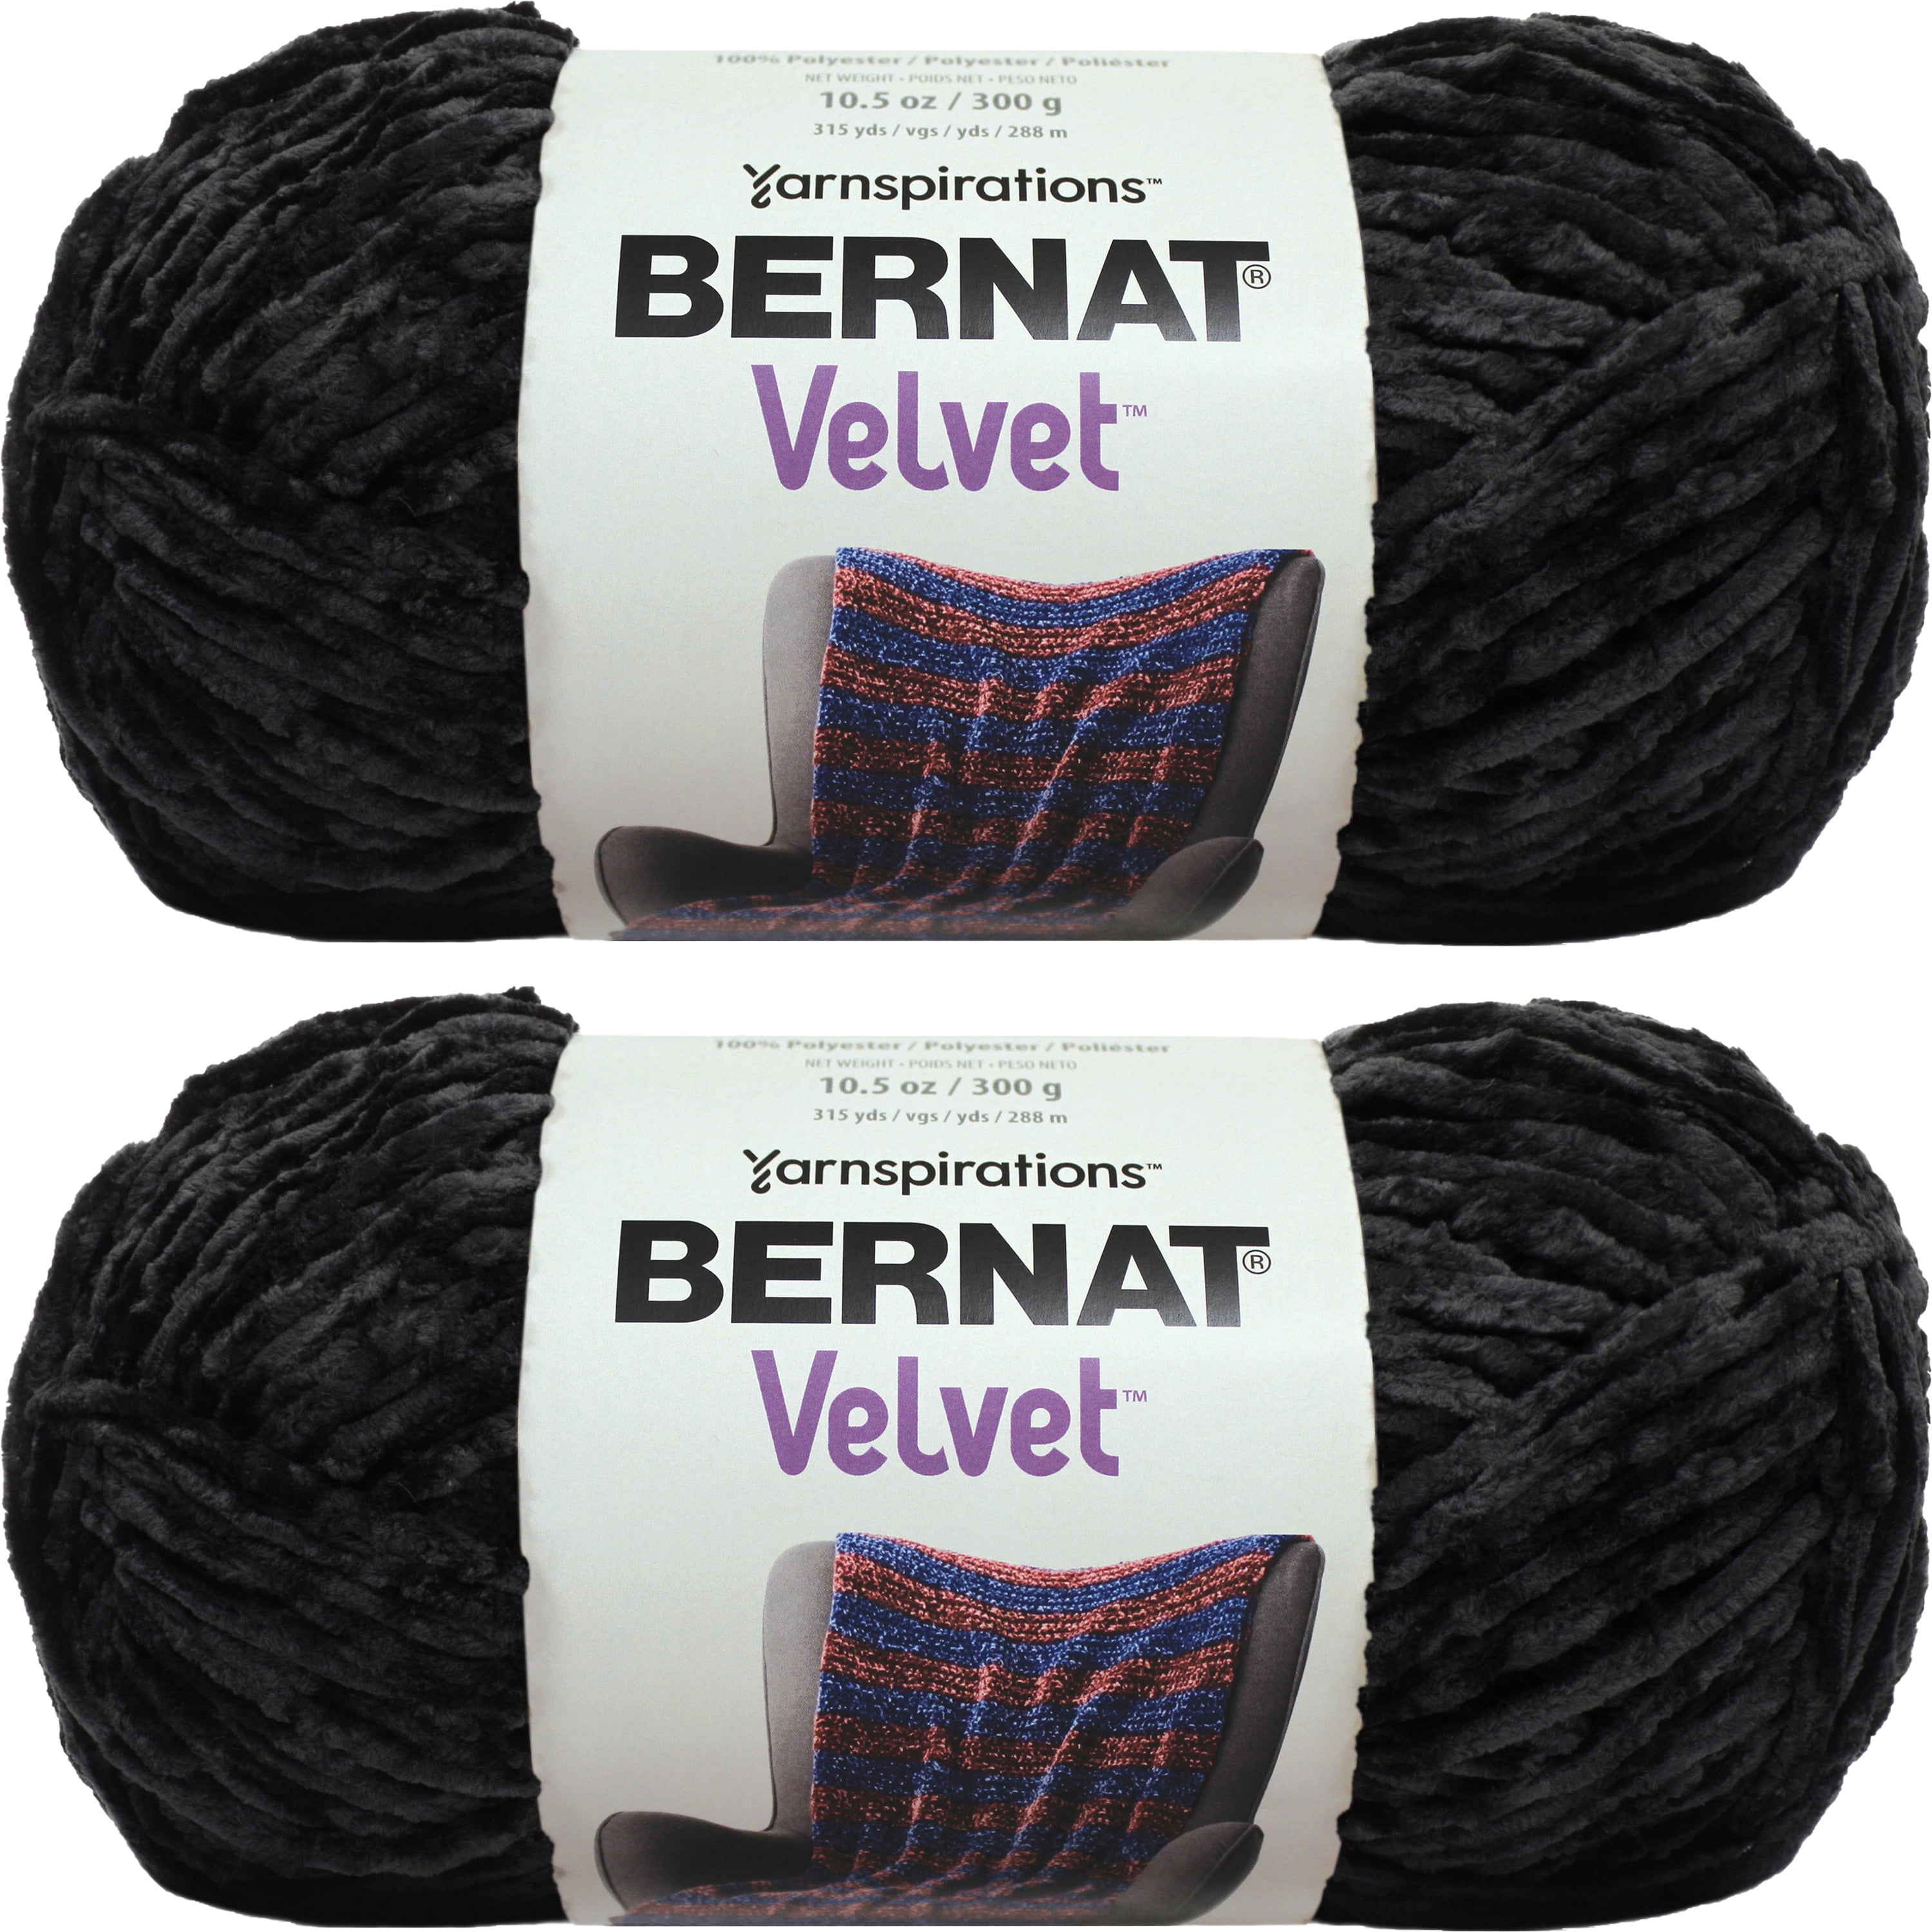 Bernat Velvet Yarn-Blackbird, Multipack Of 2 